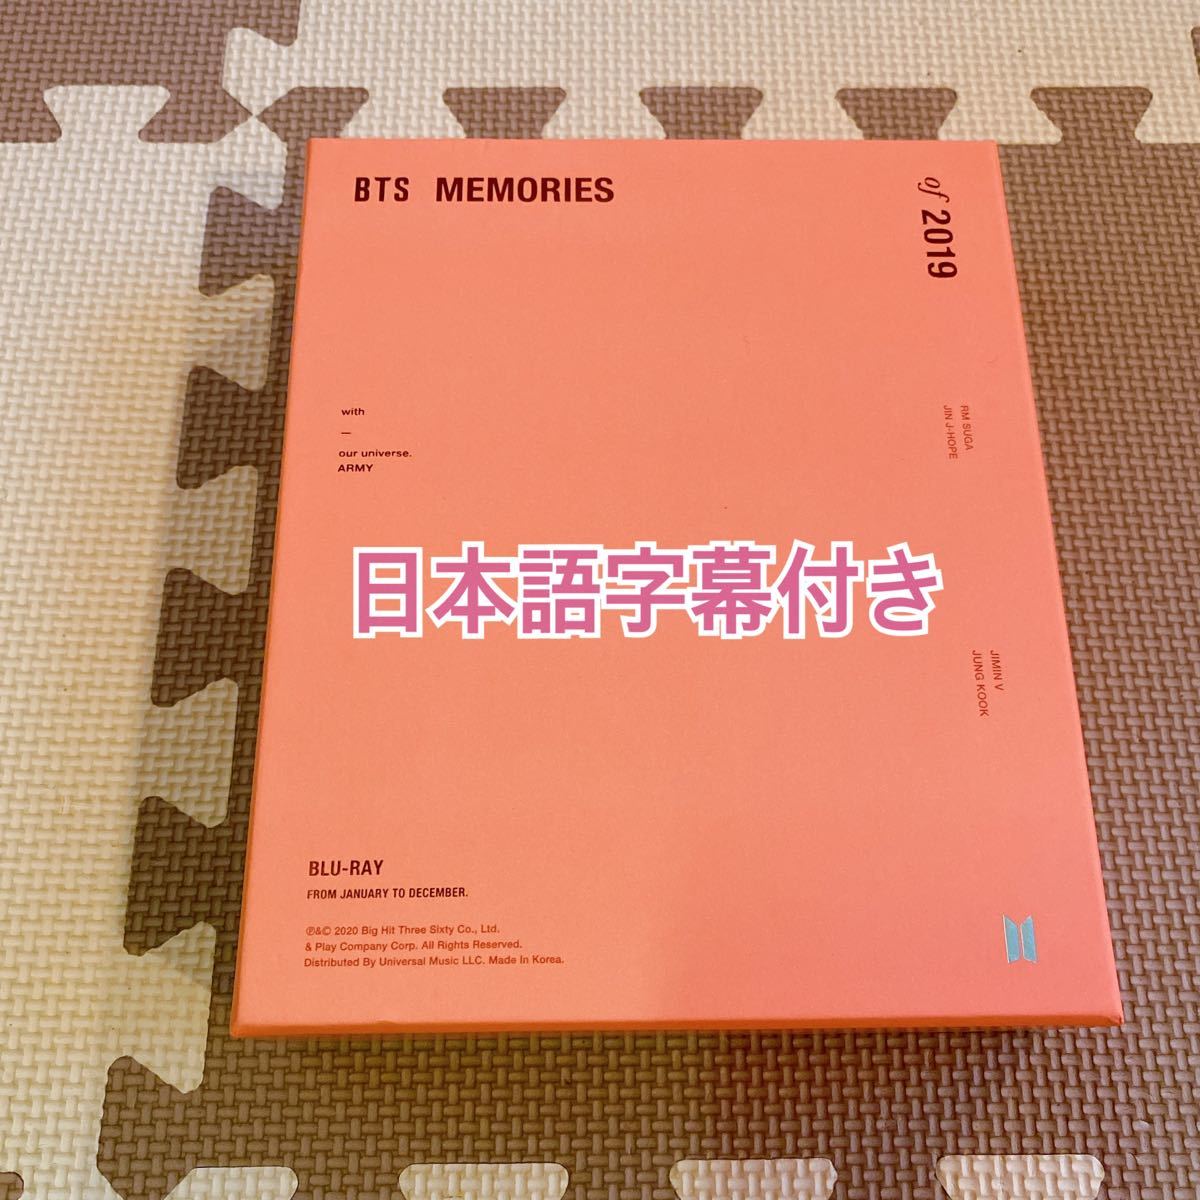 スノーブルー BTS Memories メモリーズ 2019 日本語字幕付き - 通販